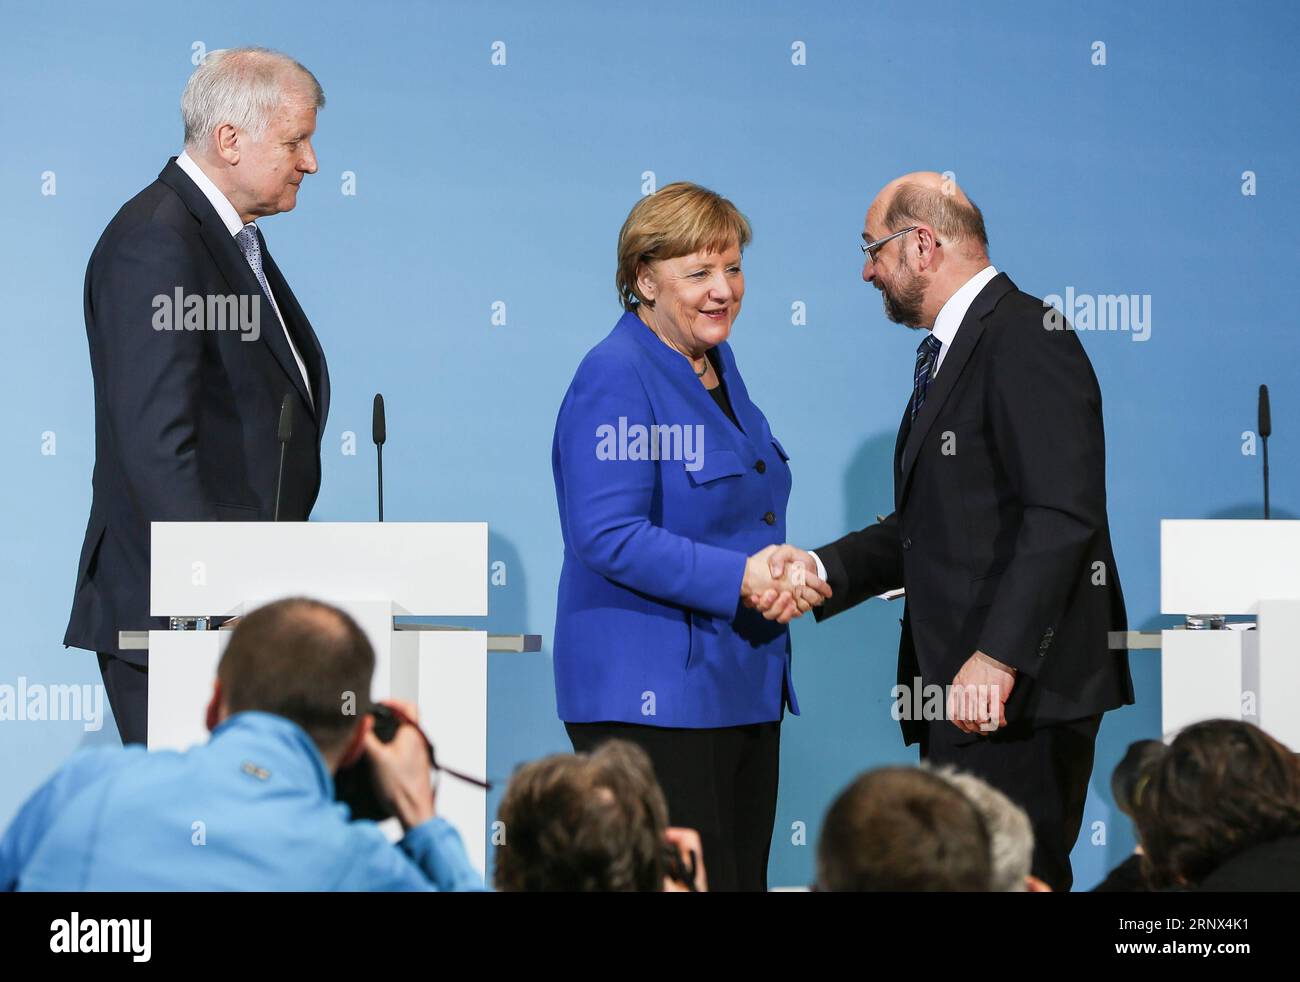 (180112) -- BERLIN, 12. Januar 2018 -- Bundeskanzlerin und Vorsitzende der Deutschen Christlich Demokratischen Union (CDU) Angela Merkel (C) gibt nach einer gemeinsamen Pressekonferenz am 12. Januar 2018 im Hauptquartier der SPD in Berlin die Hand an den Vorsitzenden der SPD Martin Schulz (R). Die Konservativen und Sozialdemokraten (SPD) der deutschen Bundeskanzlerin Angela Merkel haben am Freitag in ihren Sondierungsgesprächen zur Bildung einer neuen Koalitionsregierung einen Durchbruch erzielt, berichteten lokale Medien. )(srb) DEUTSCHLAND-BERLIN-KOALITION SPRICHT DURCHBRUCH ShanxYuqi PUBLICATIONxNOTxINxCHN Stockfoto